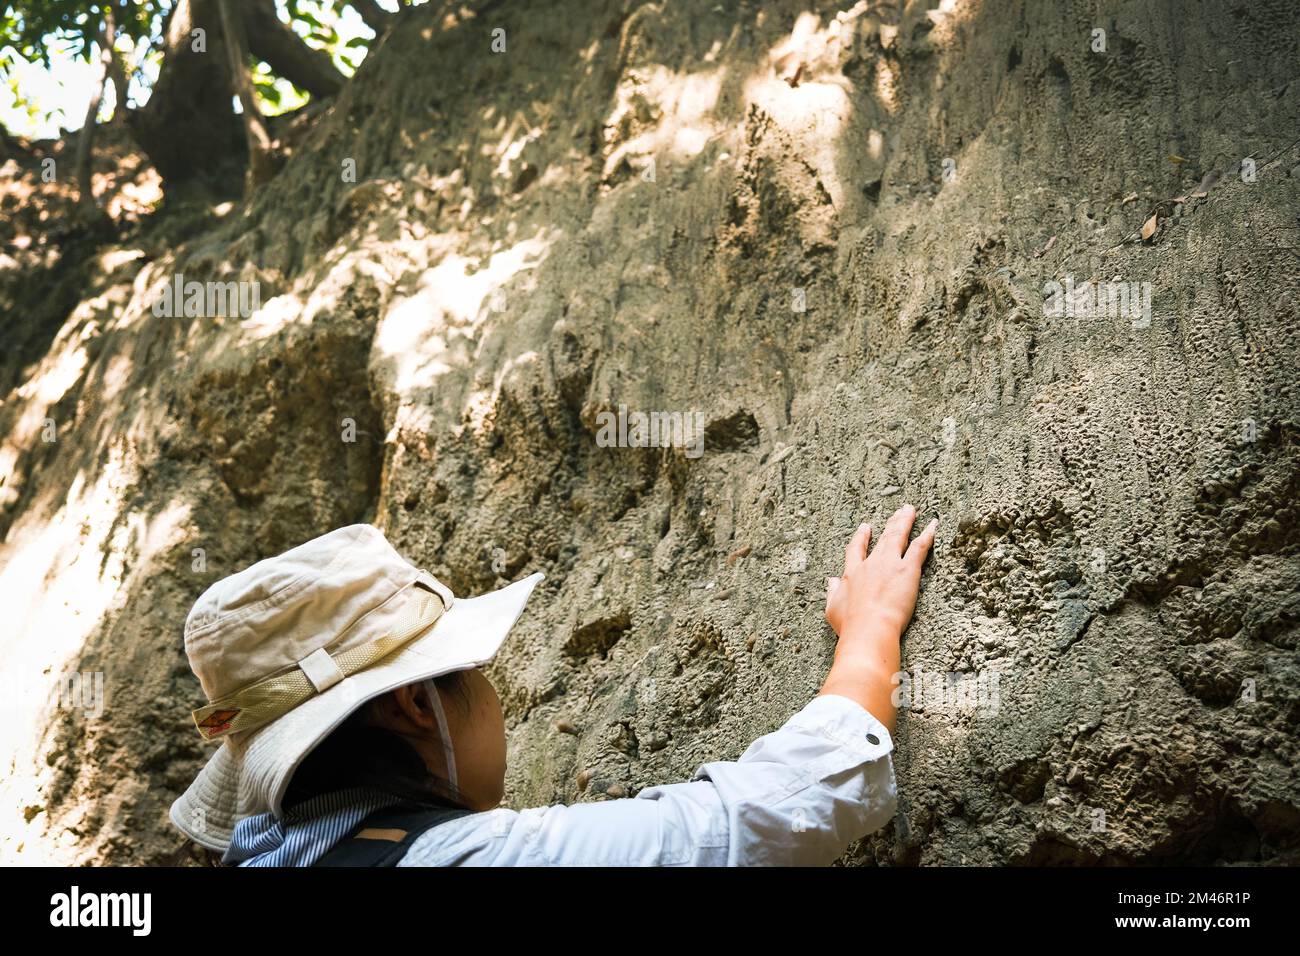 Femme géologue avec sac à dos explorant le sentier de la nature en forêt et analysant le rocher ou le gravier. Les chercheurs recueillent des échantillons de matériel biologique. Env Banque D'Images